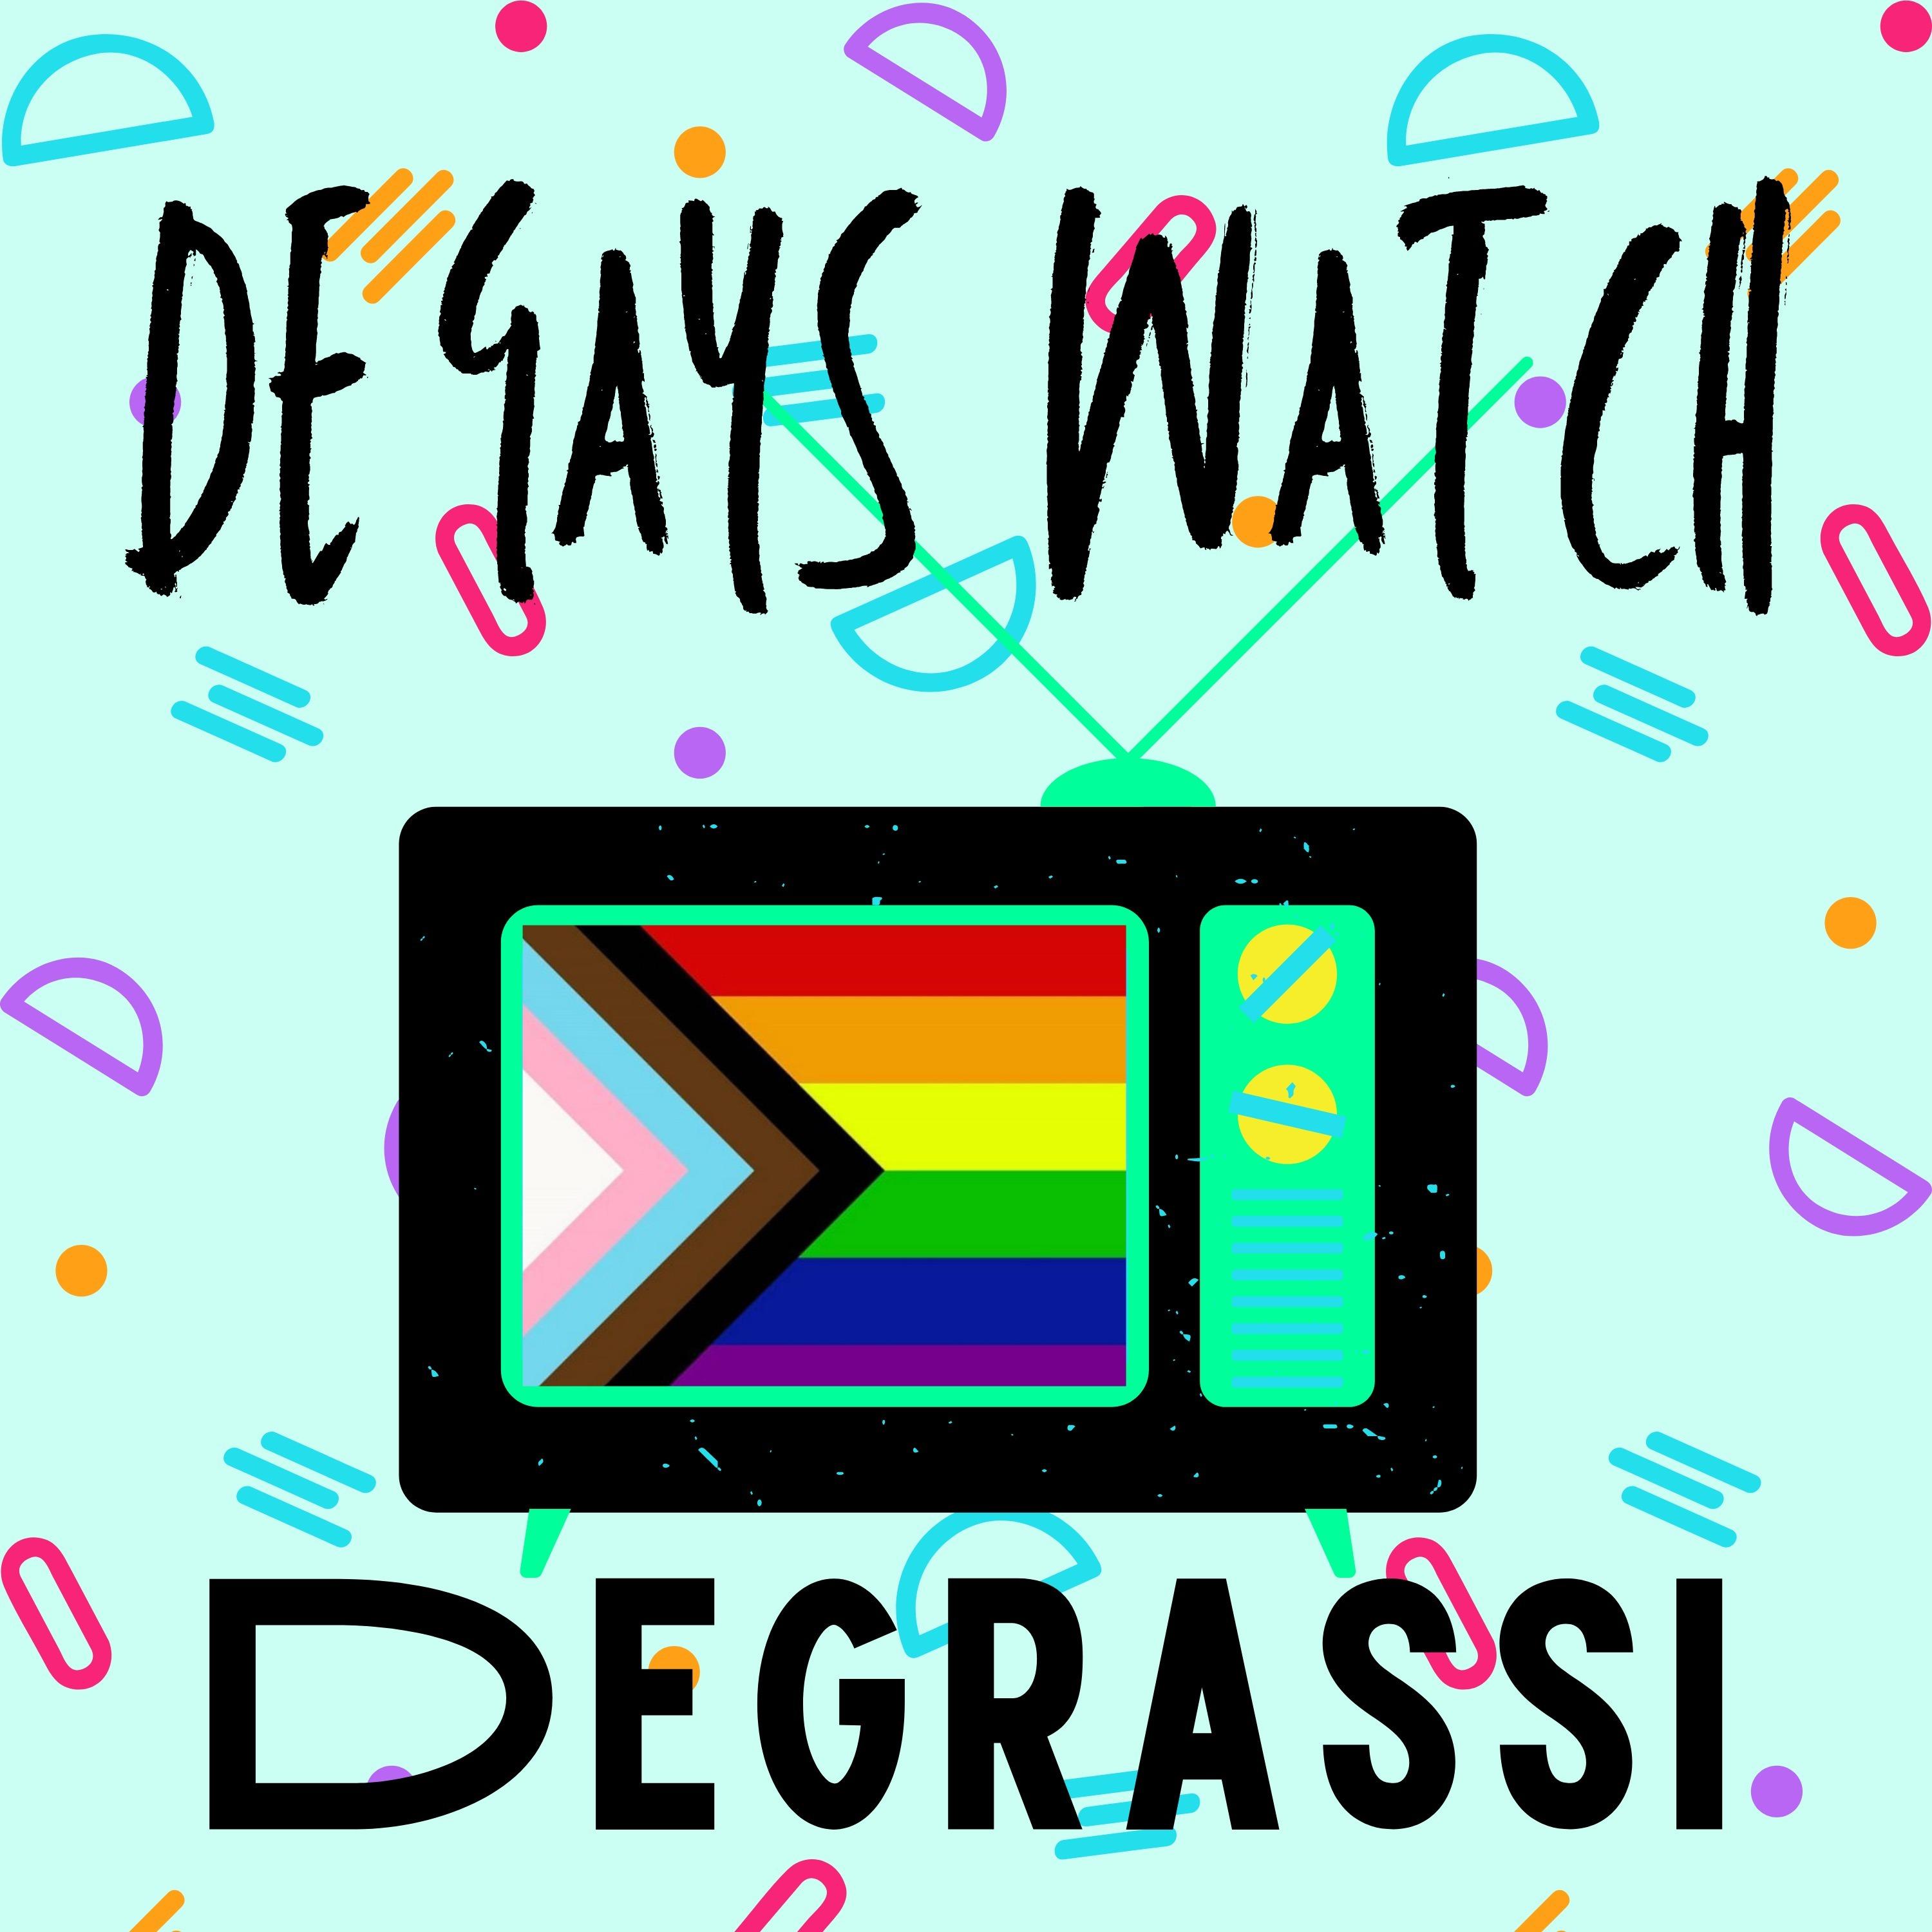 De Gays Watch Degrassi